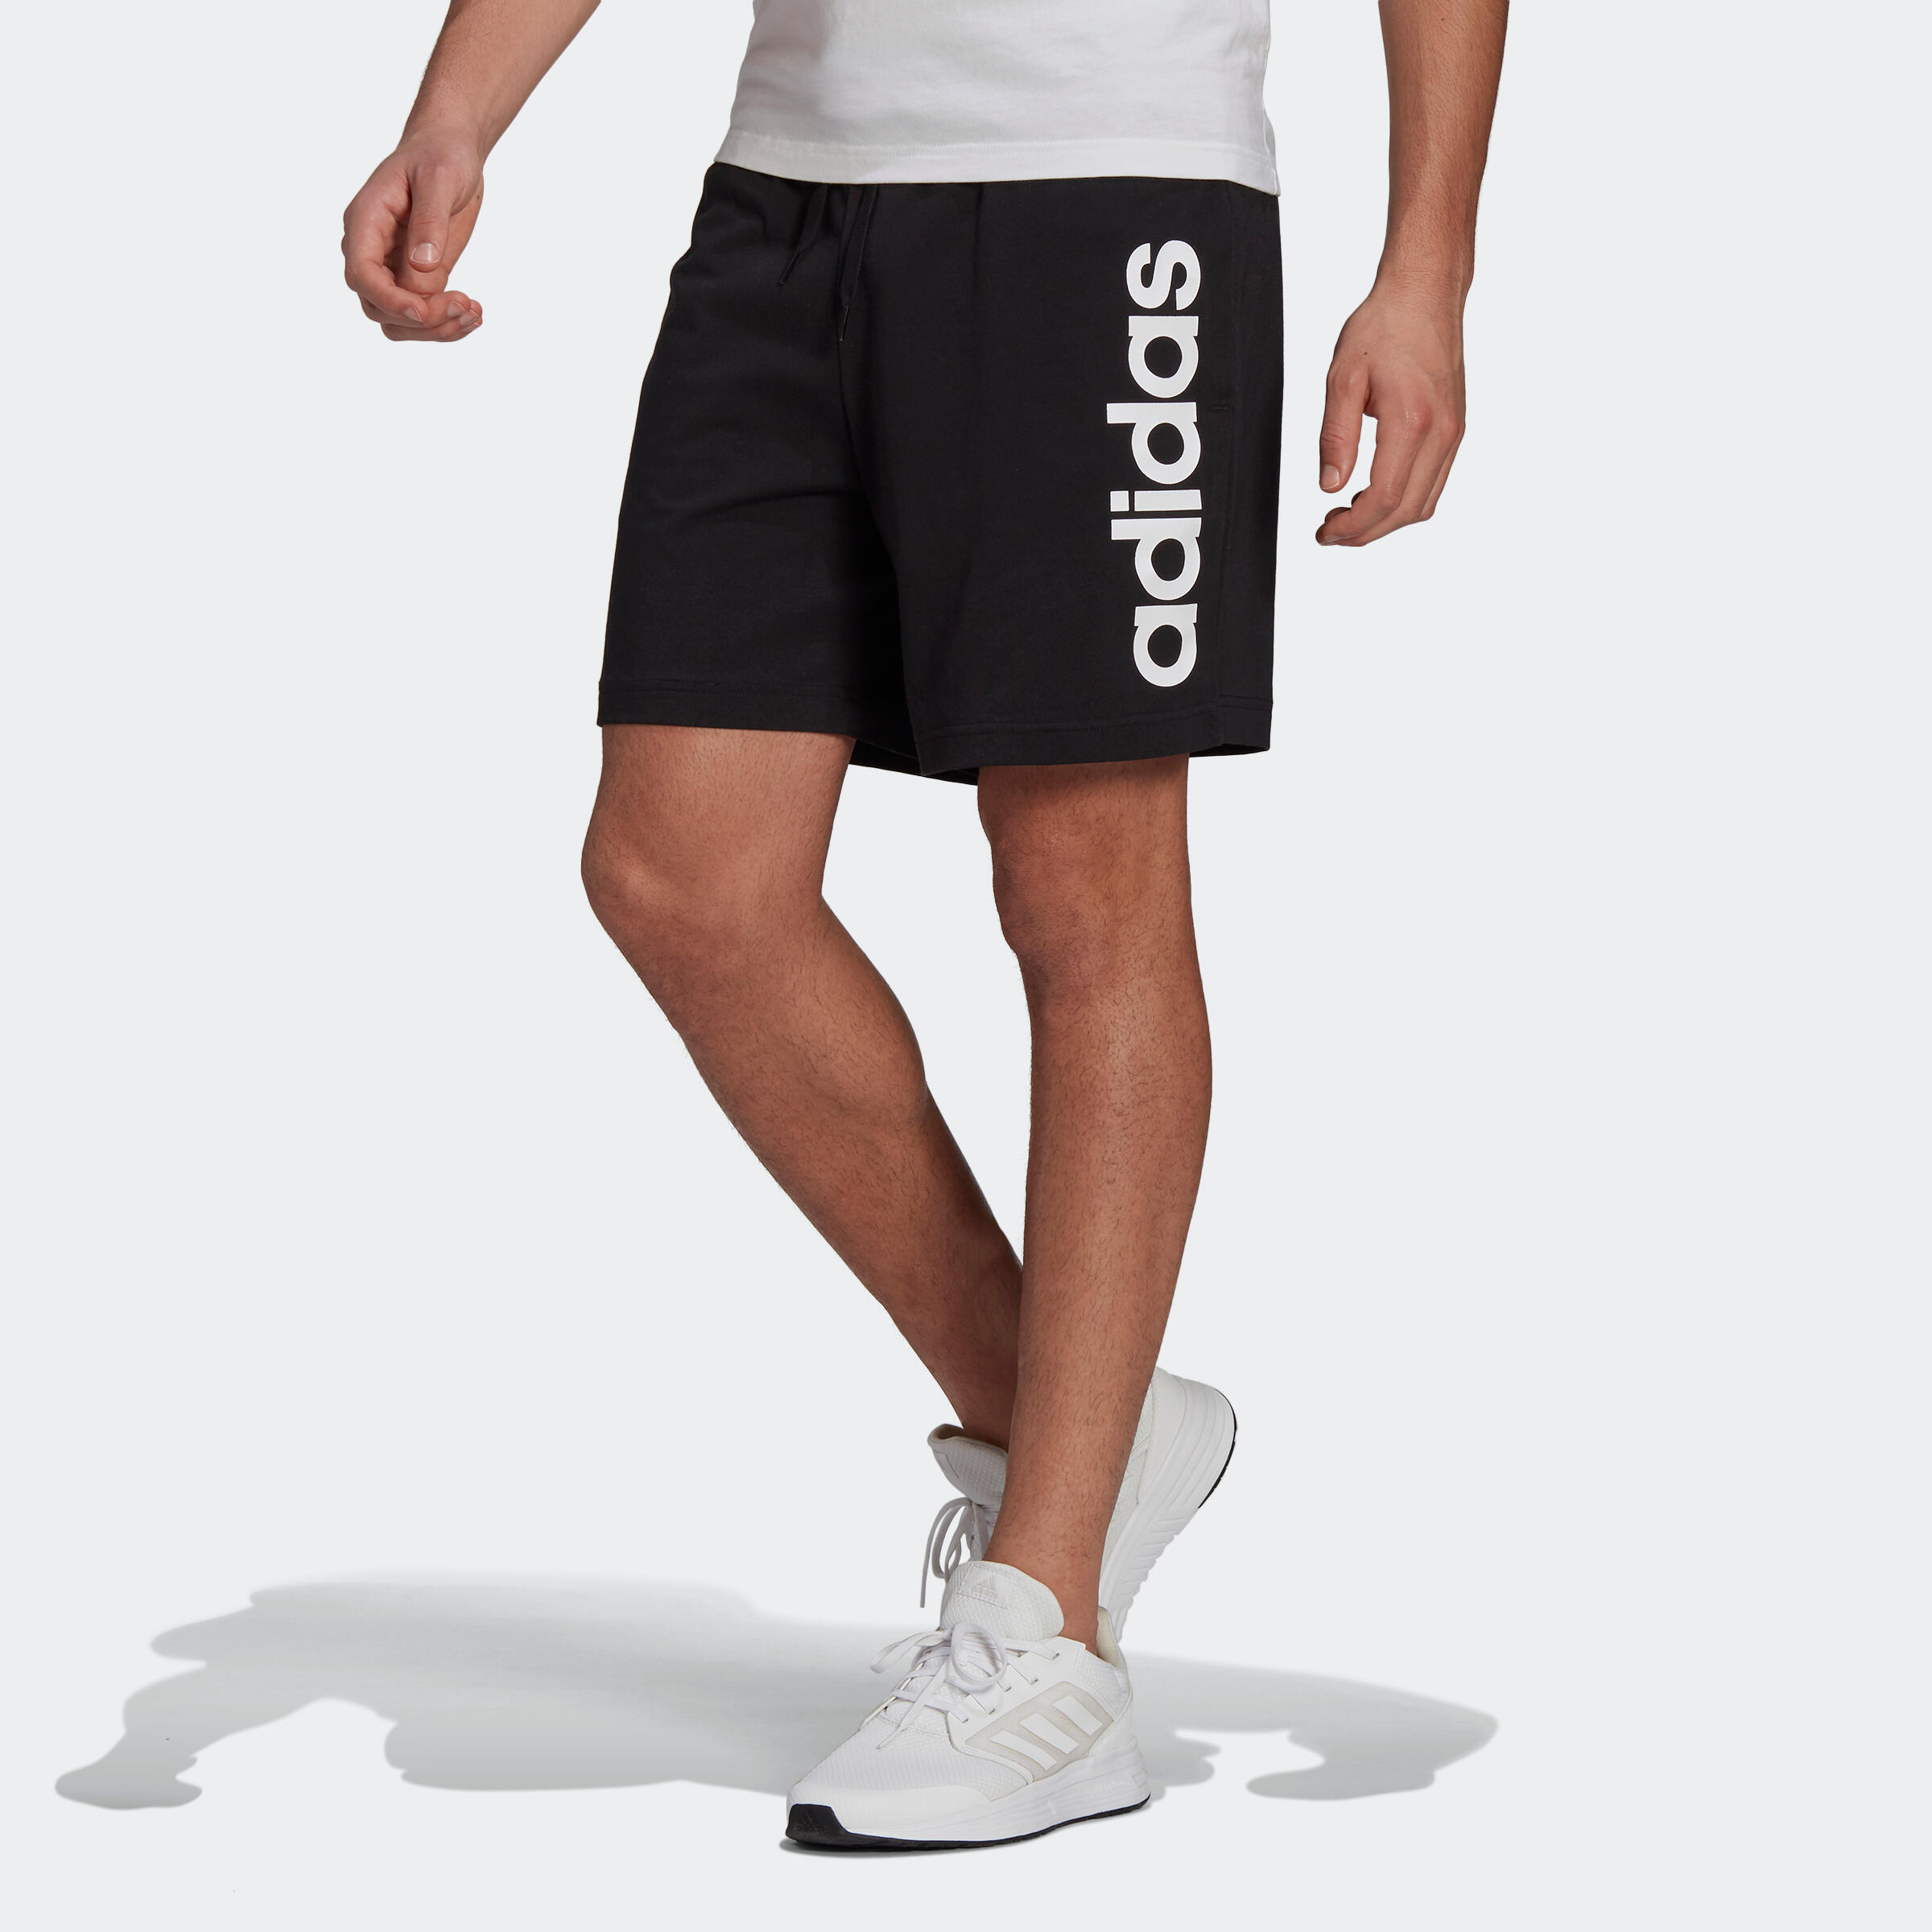 Pantalon scurt Fitness Adidas bărbați adidas